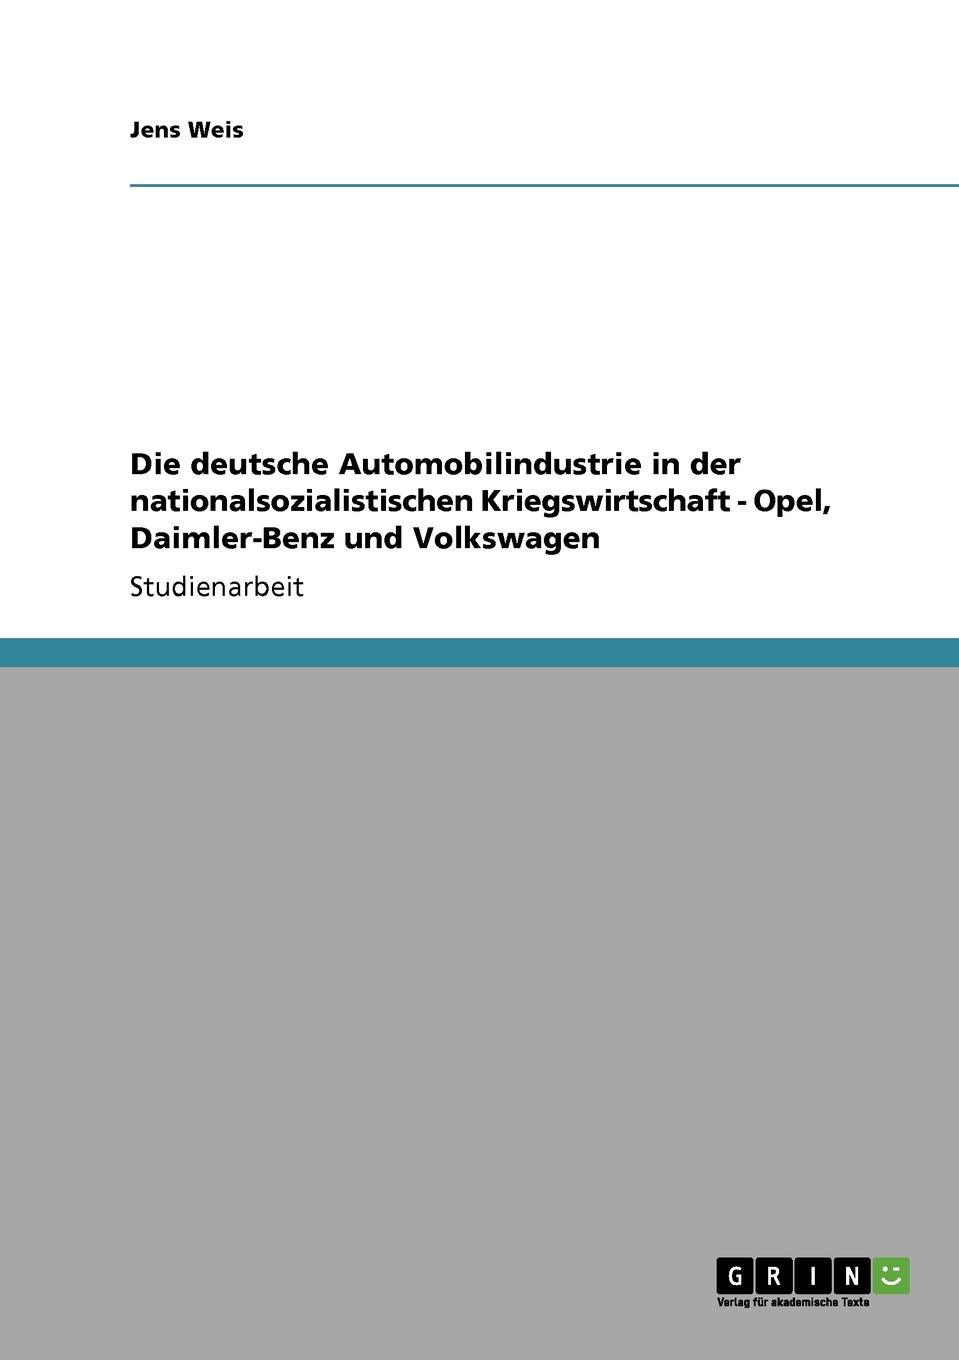 Die deutsche Automobilindustrie in der nationalsozialistischen Kriegswirtschaft - Opel, Daimler-Benz und Volkswagen